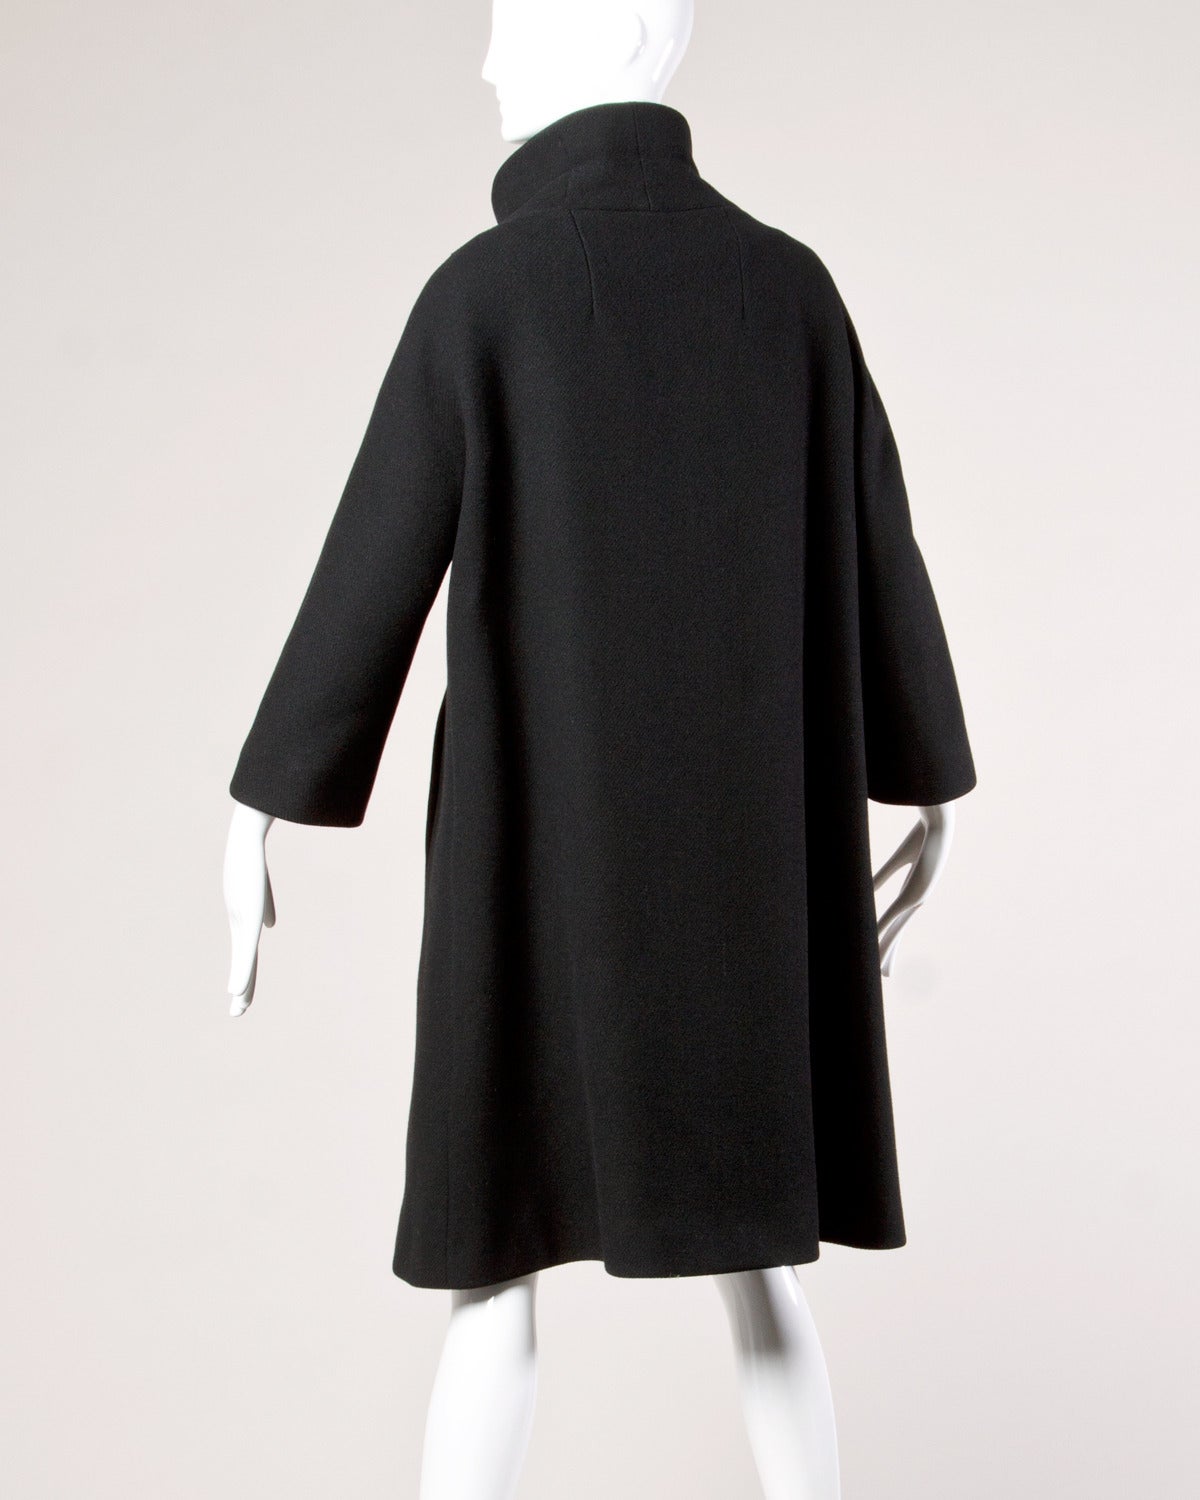 Louis Feraud Vintage 1960s 60s Mod Heavy Black Wool Coat 3